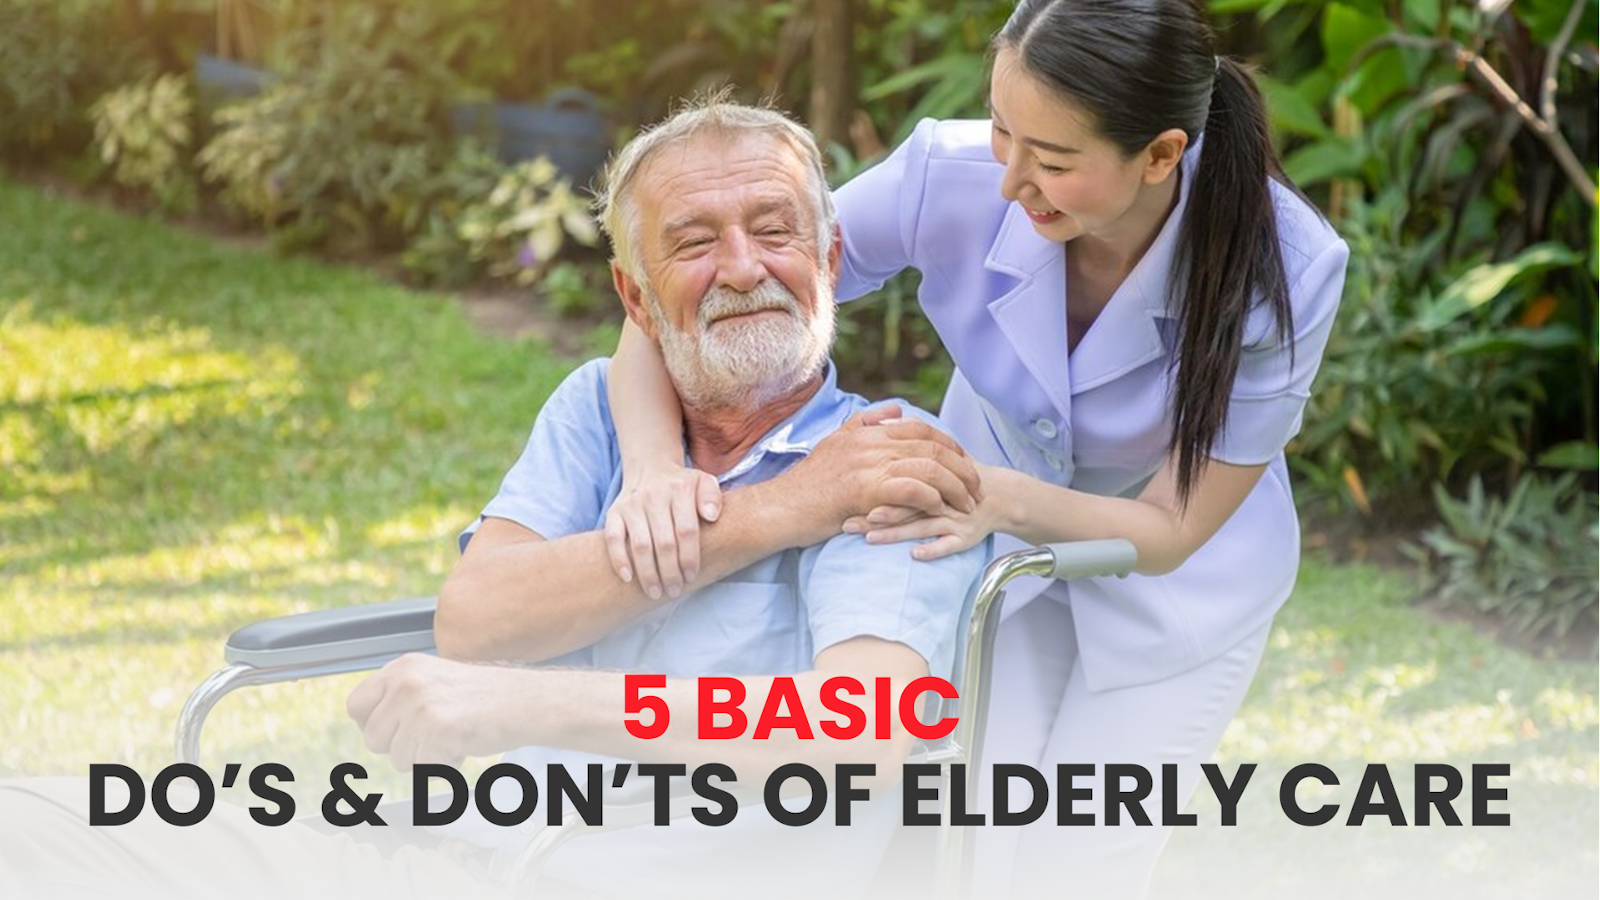 5 BASIC DO’S & DON’TS OF ELDERLY CARE